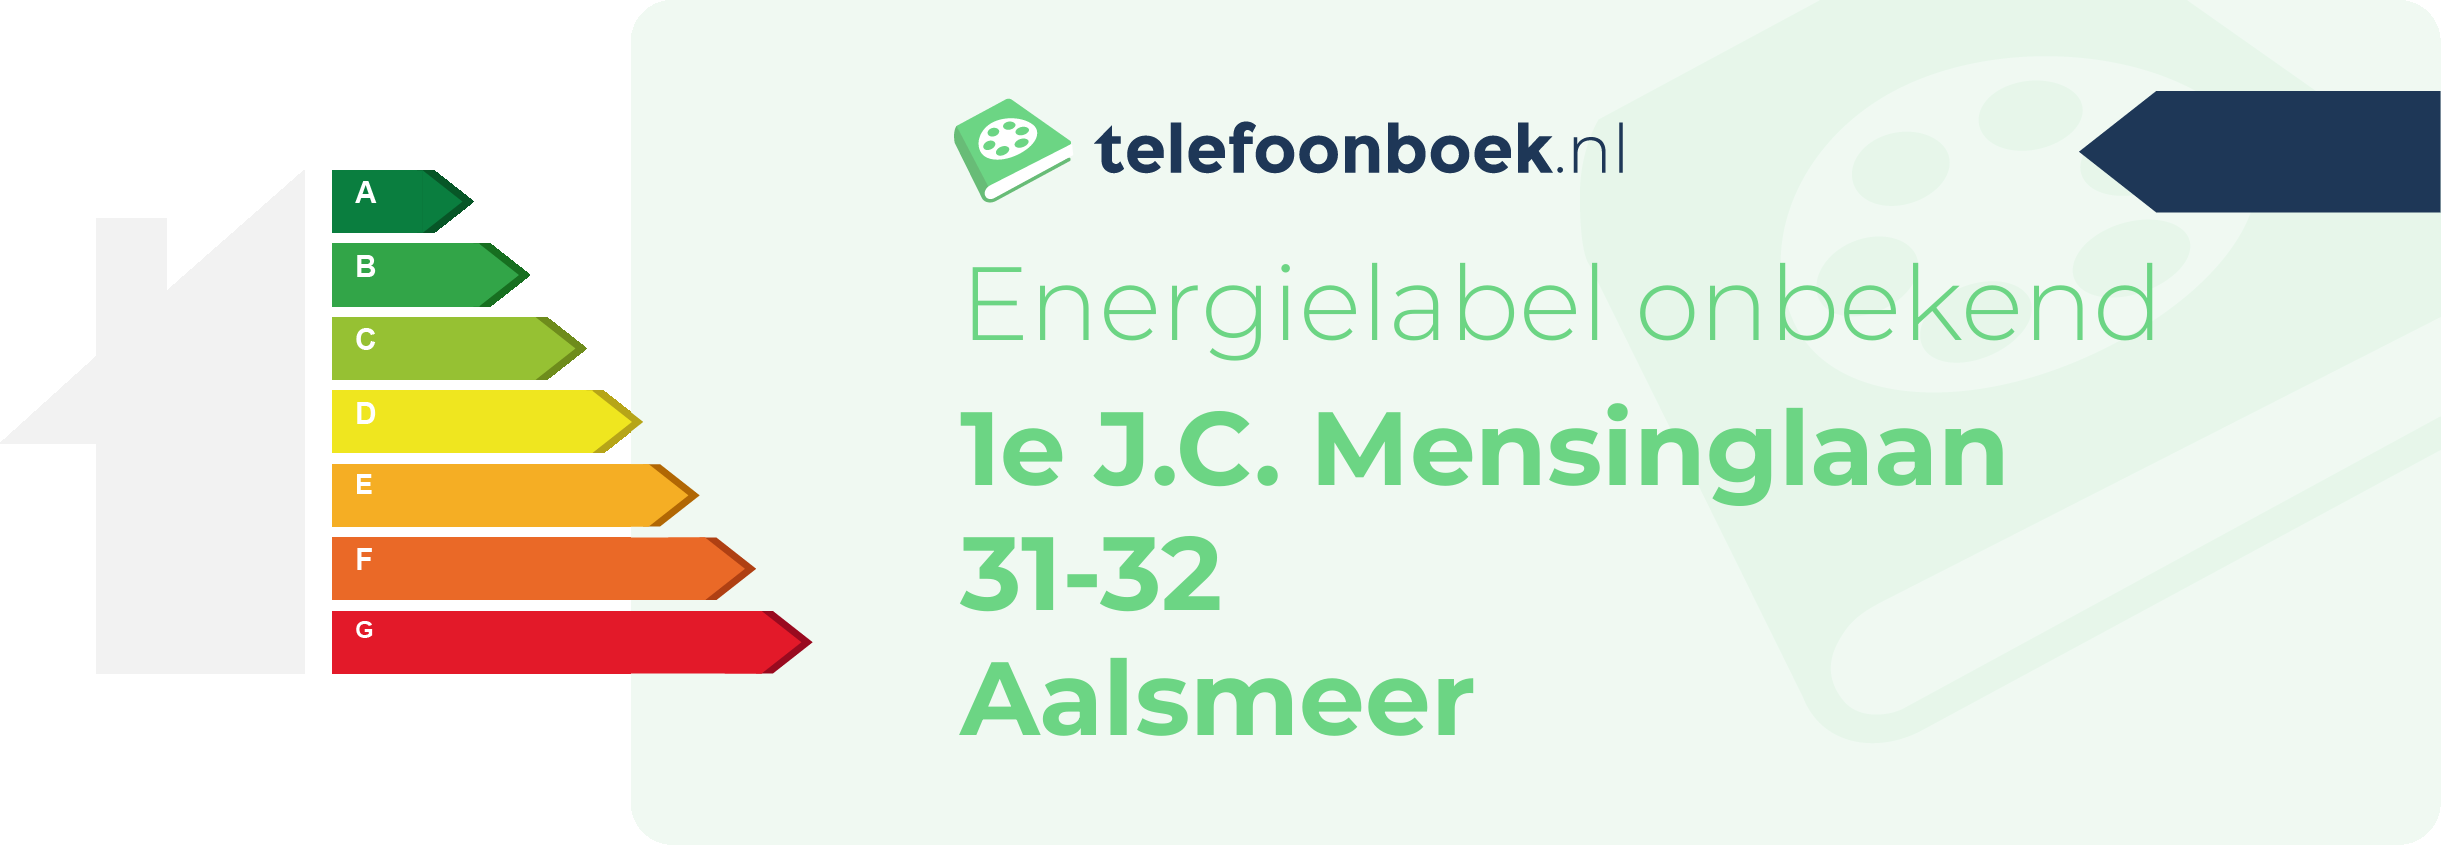 Energielabel 1e J.C. Mensinglaan 31-32 Aalsmeer